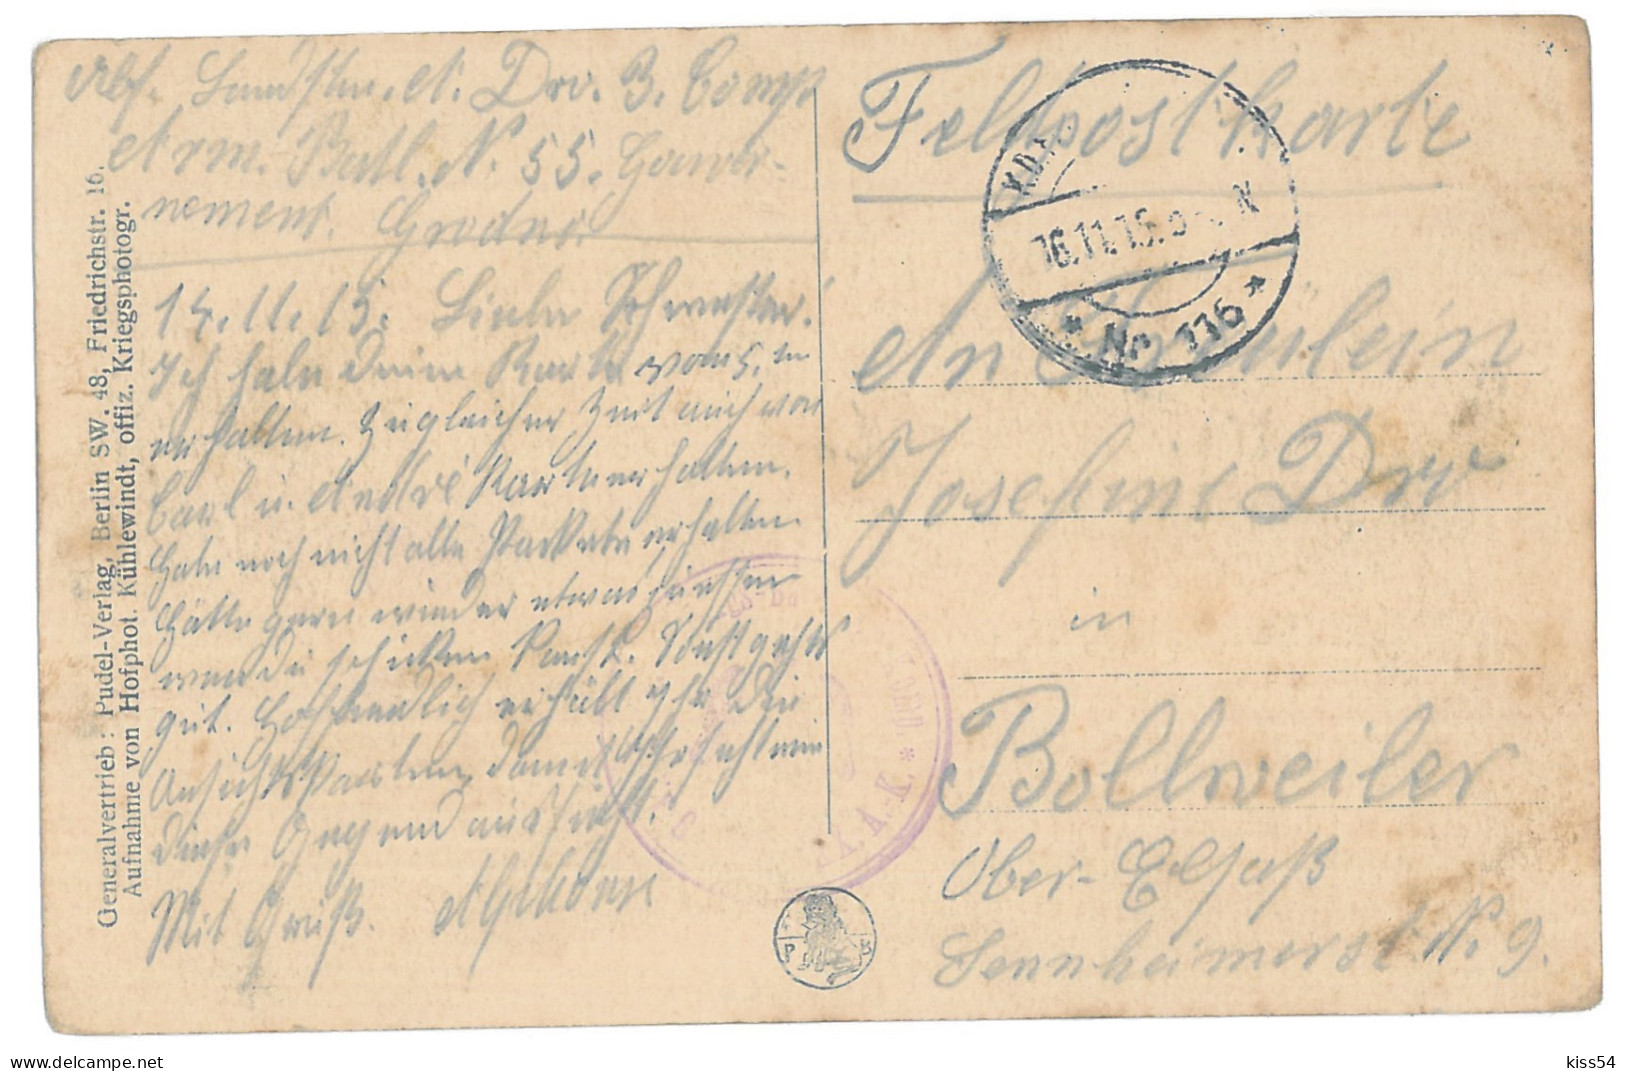 BL 28 - 14633 GRODNO, Railway Station, Bombed, Belarus - Old Postcard, CENSOR - Used - 1915 - Weißrussland